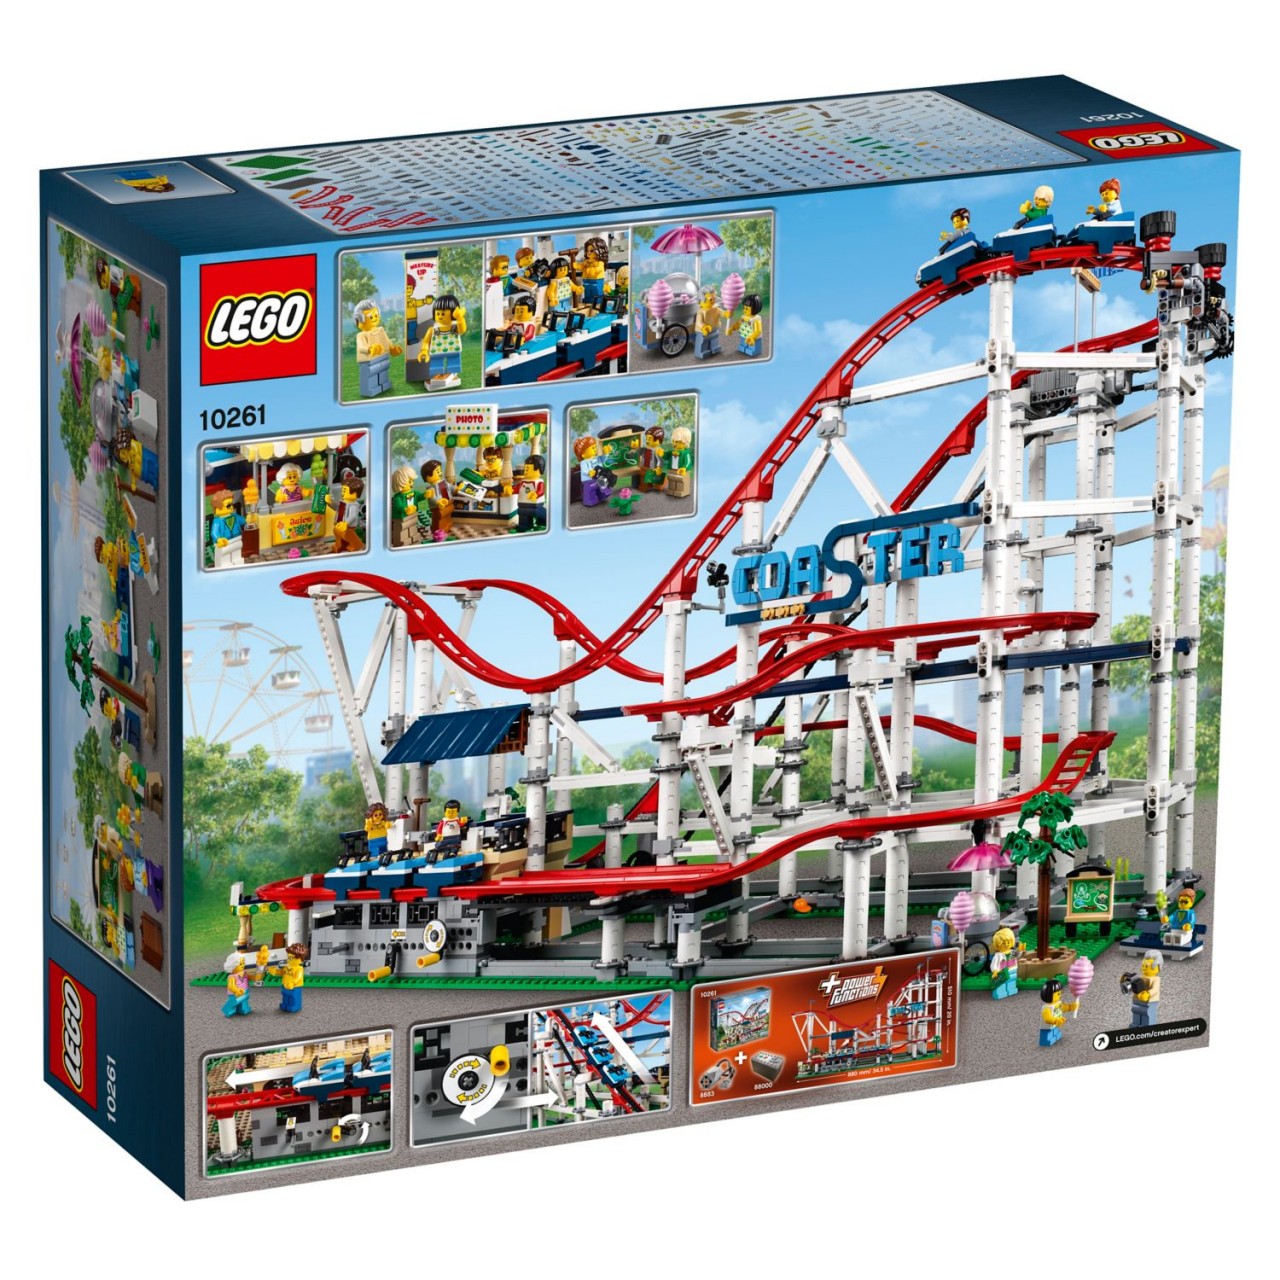 LEGO CREATOR 10261 Achterbahn